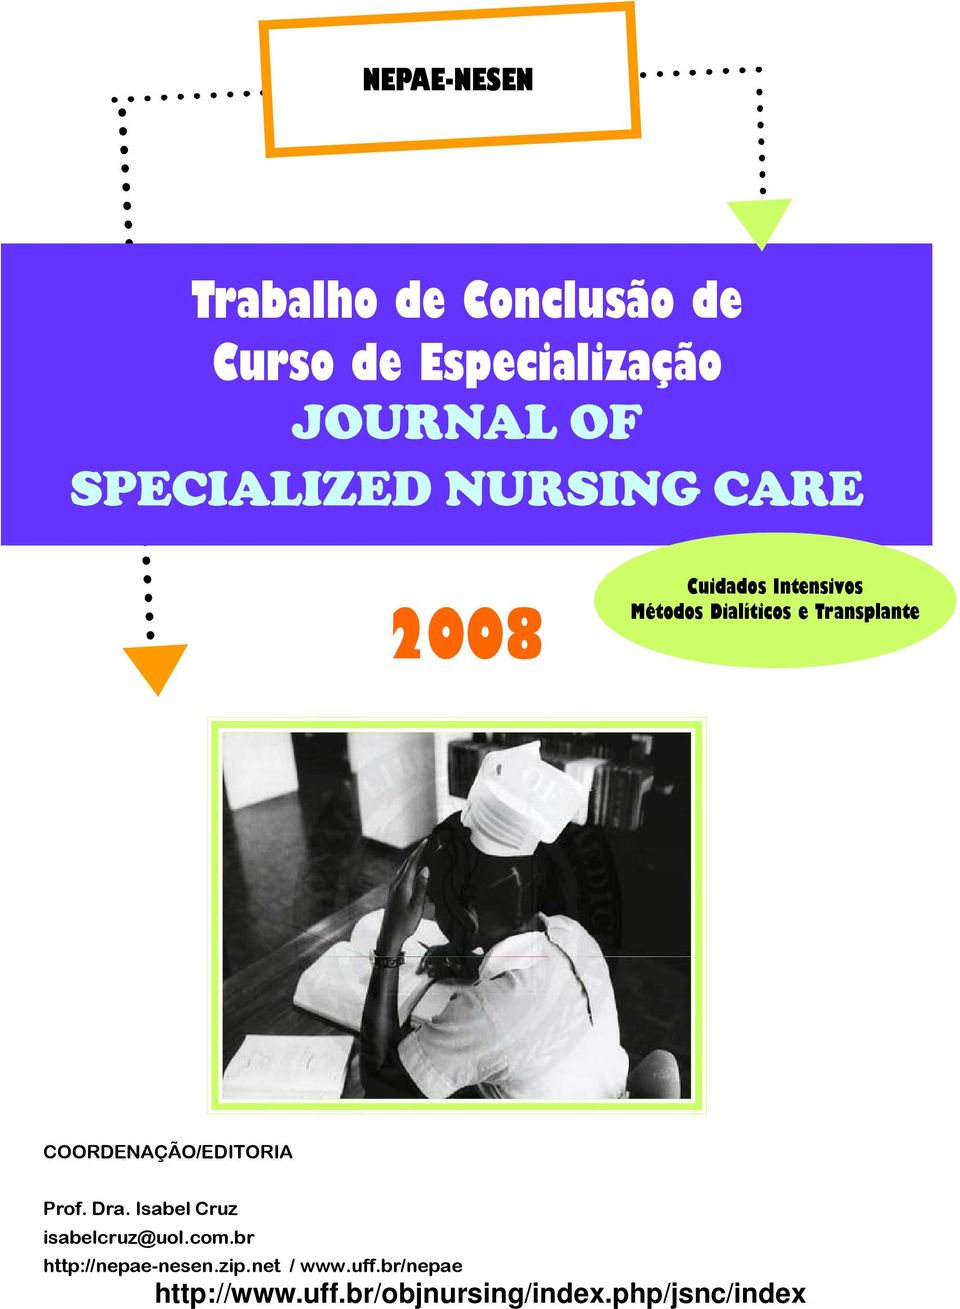 Transplante COORDENAÇÃO/EDITORIA Prof. Dra. Isabel Cruz isabelcruz@uol.com.